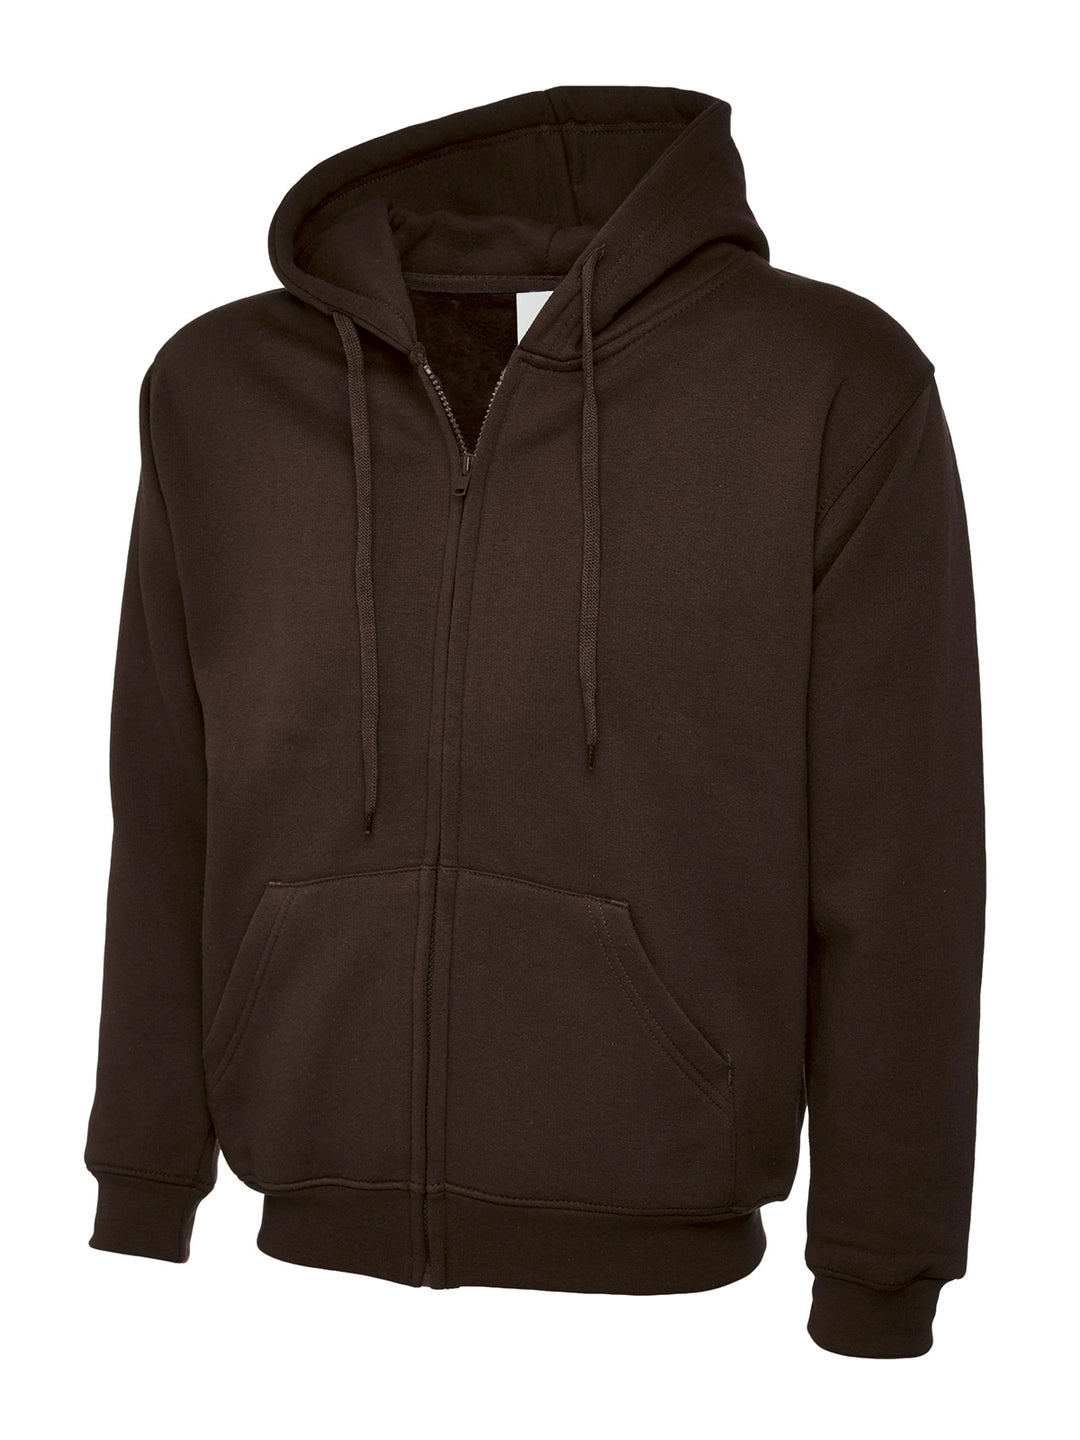 Uneek Clothing UC504 Adults Classic Full Zip Hooded Sweatshirt - COOZO